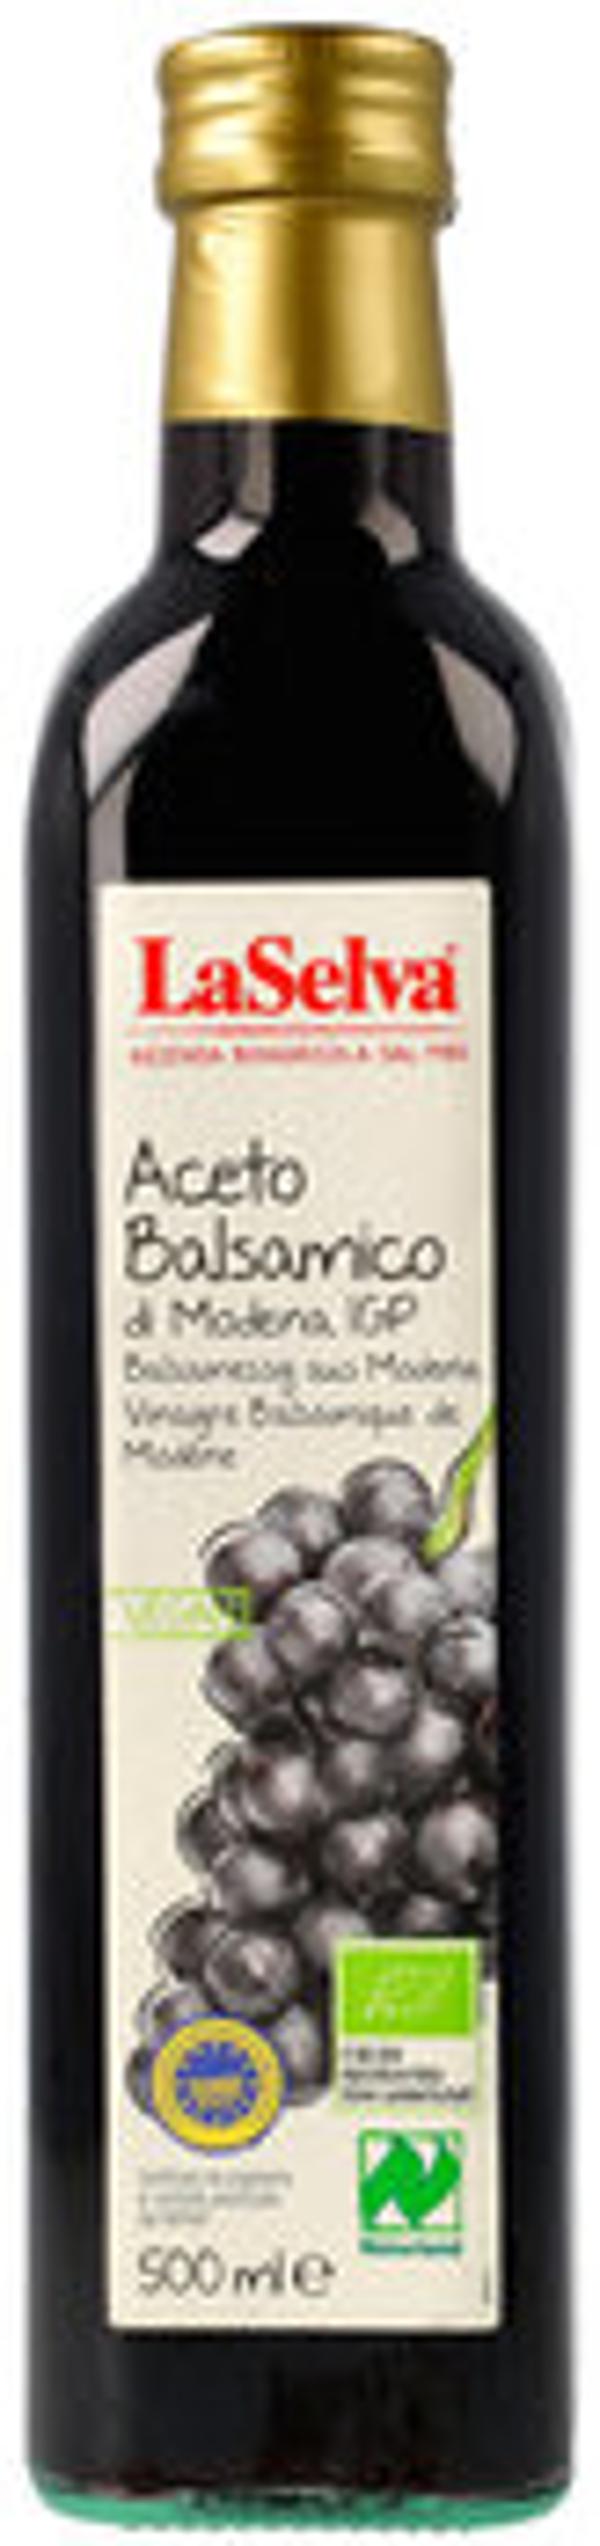 Produktfoto zu Aceto balsamico di Modena 0,5l